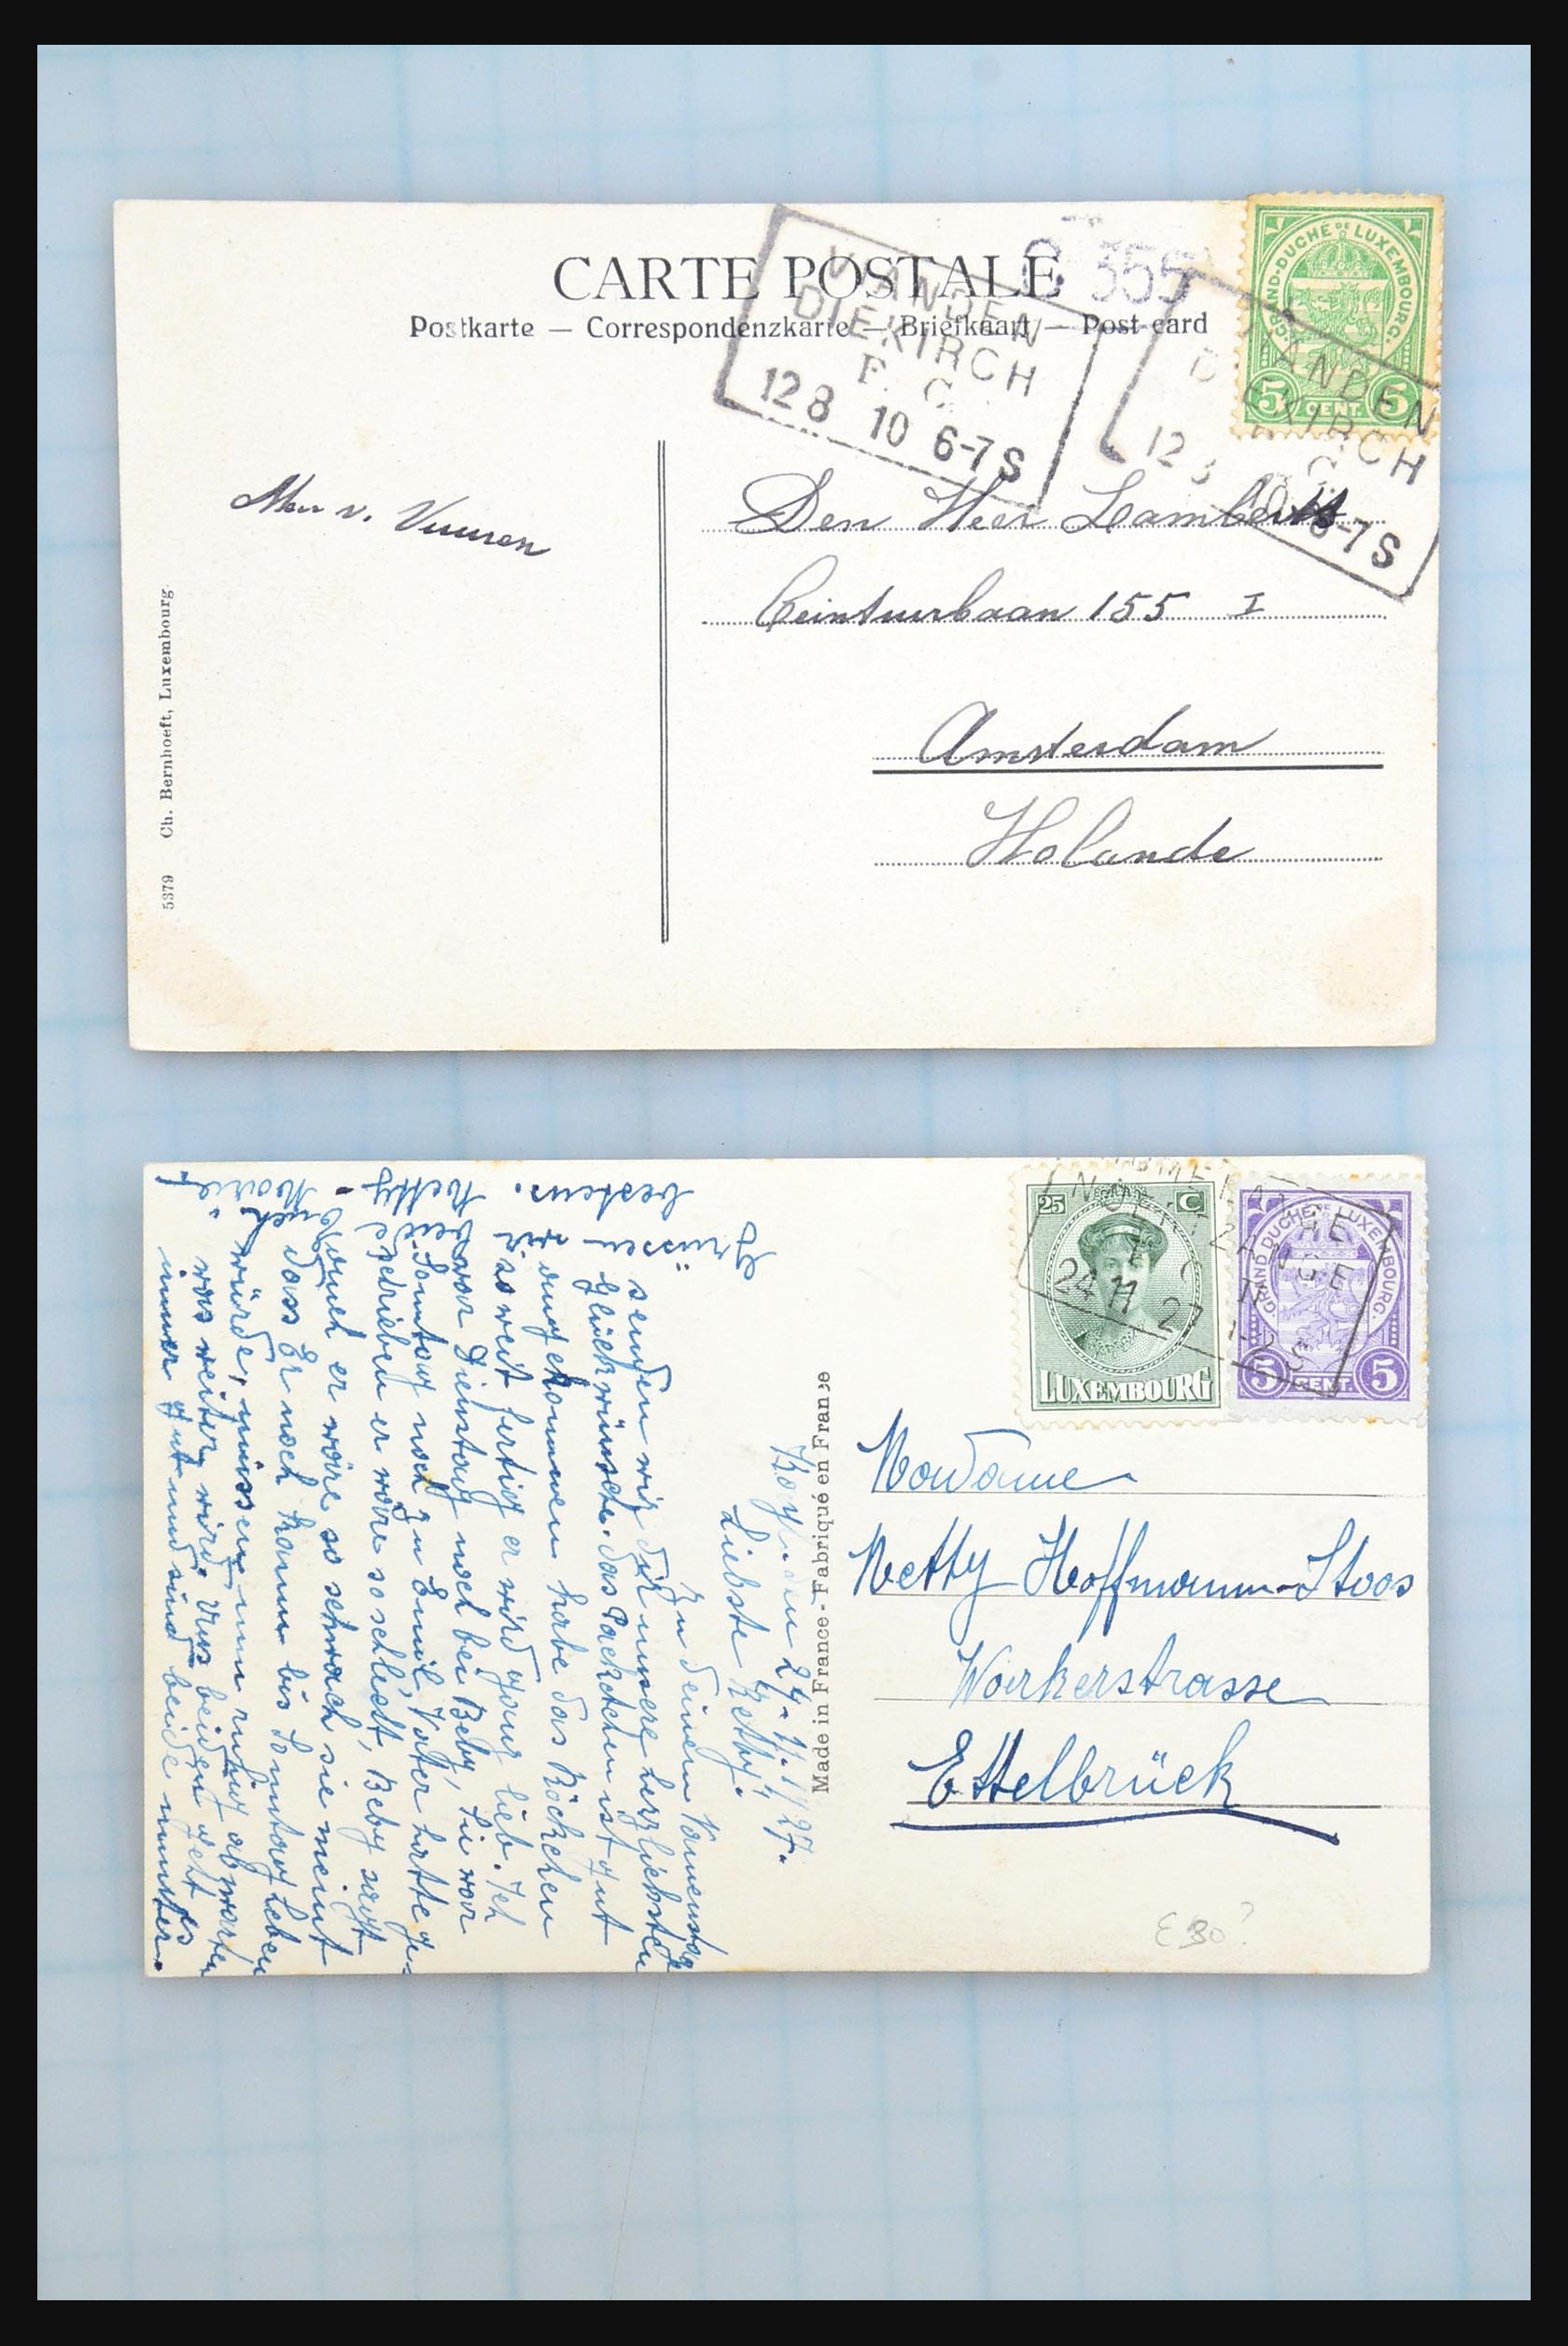 31358 104 - 31358 Portugal/Luxemburg/Griekenland brieven 1880-1960.